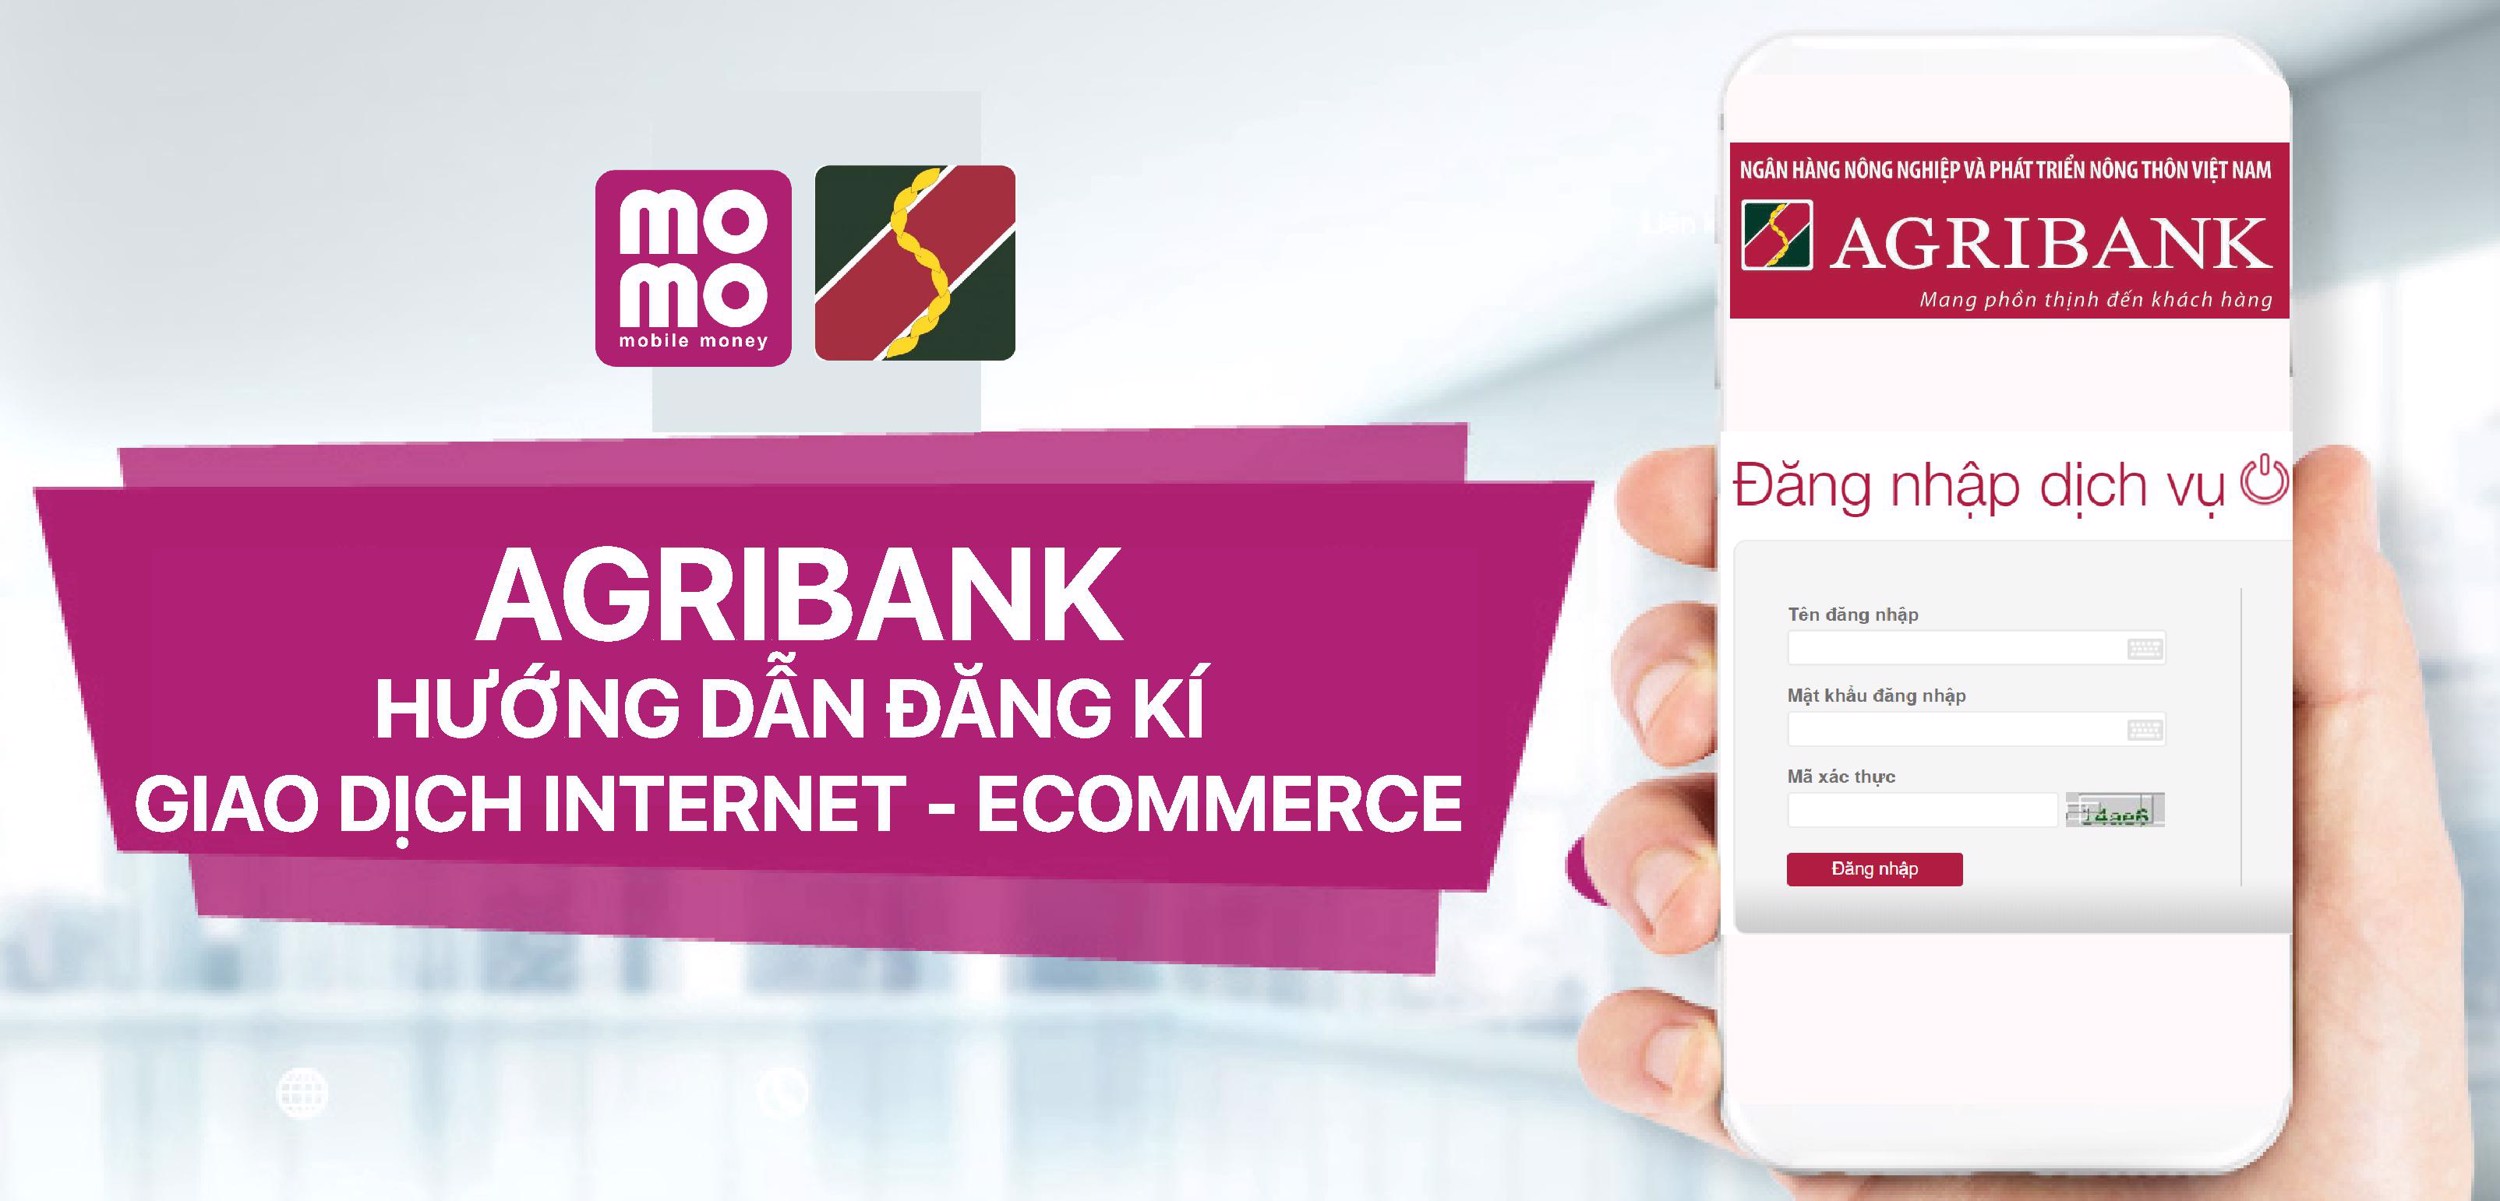 Hướng dẫn đăng kí giao dịch Internet - Ecommerce của ngân hàng Agribank